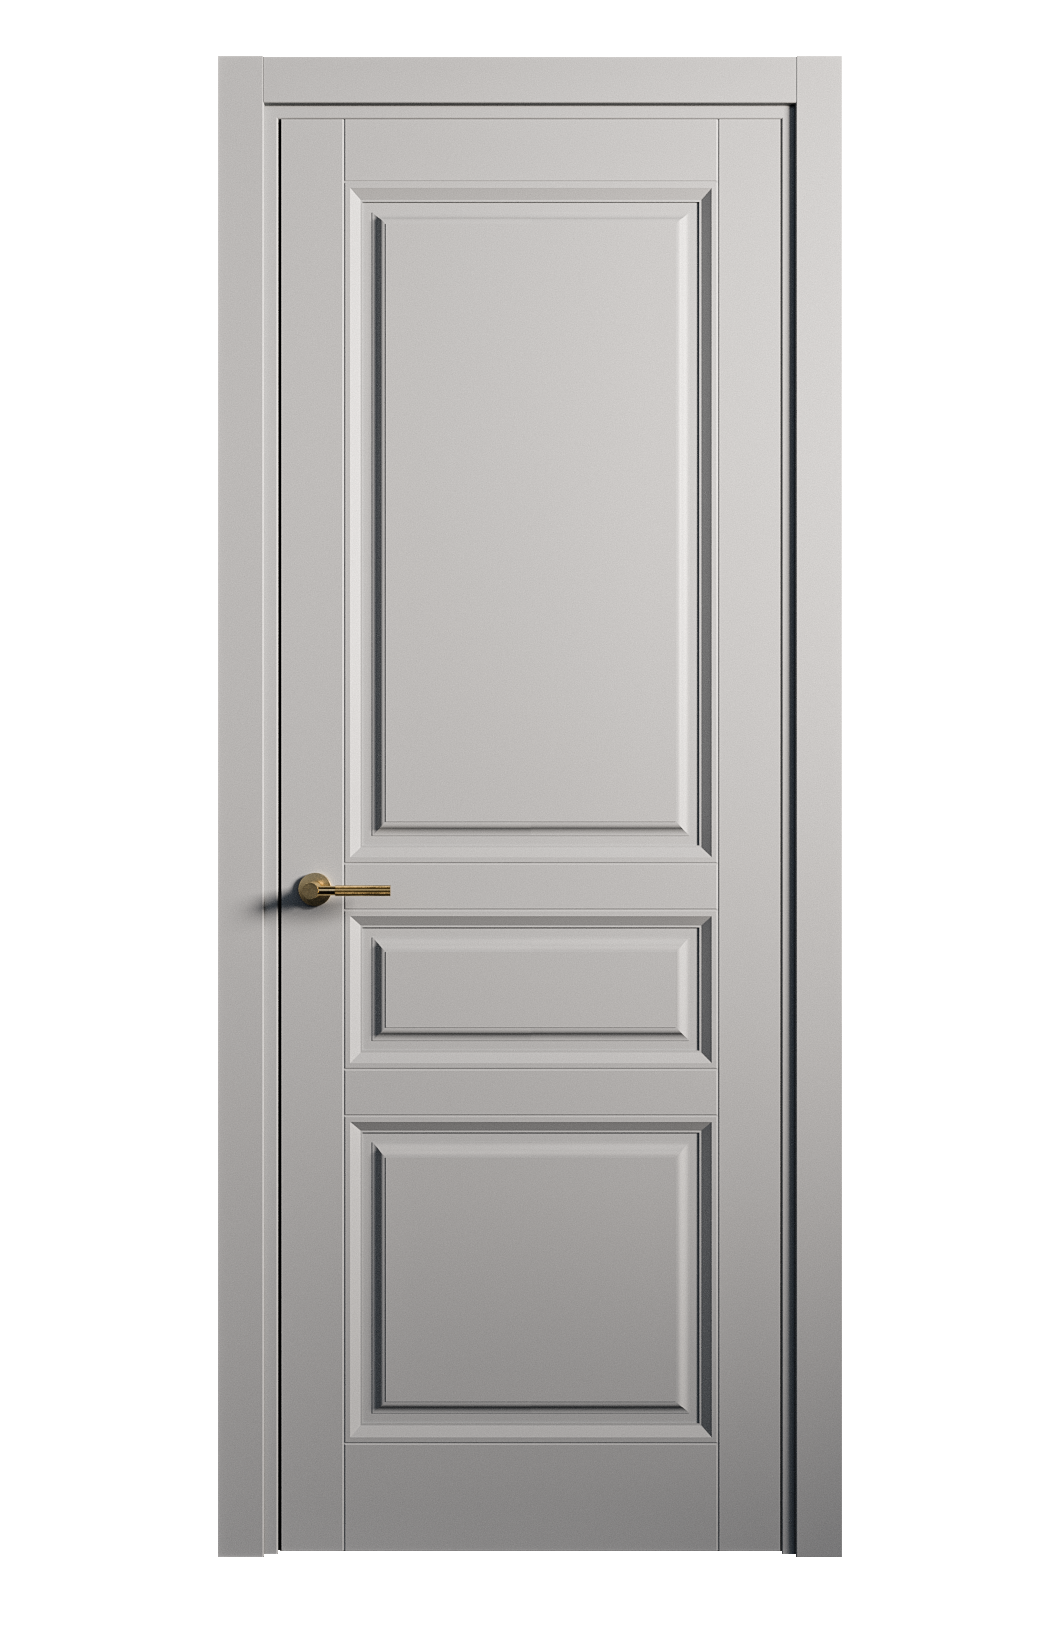 Межкомнатная дверь Venezia-2 глухая эмаль ral 7040 25705